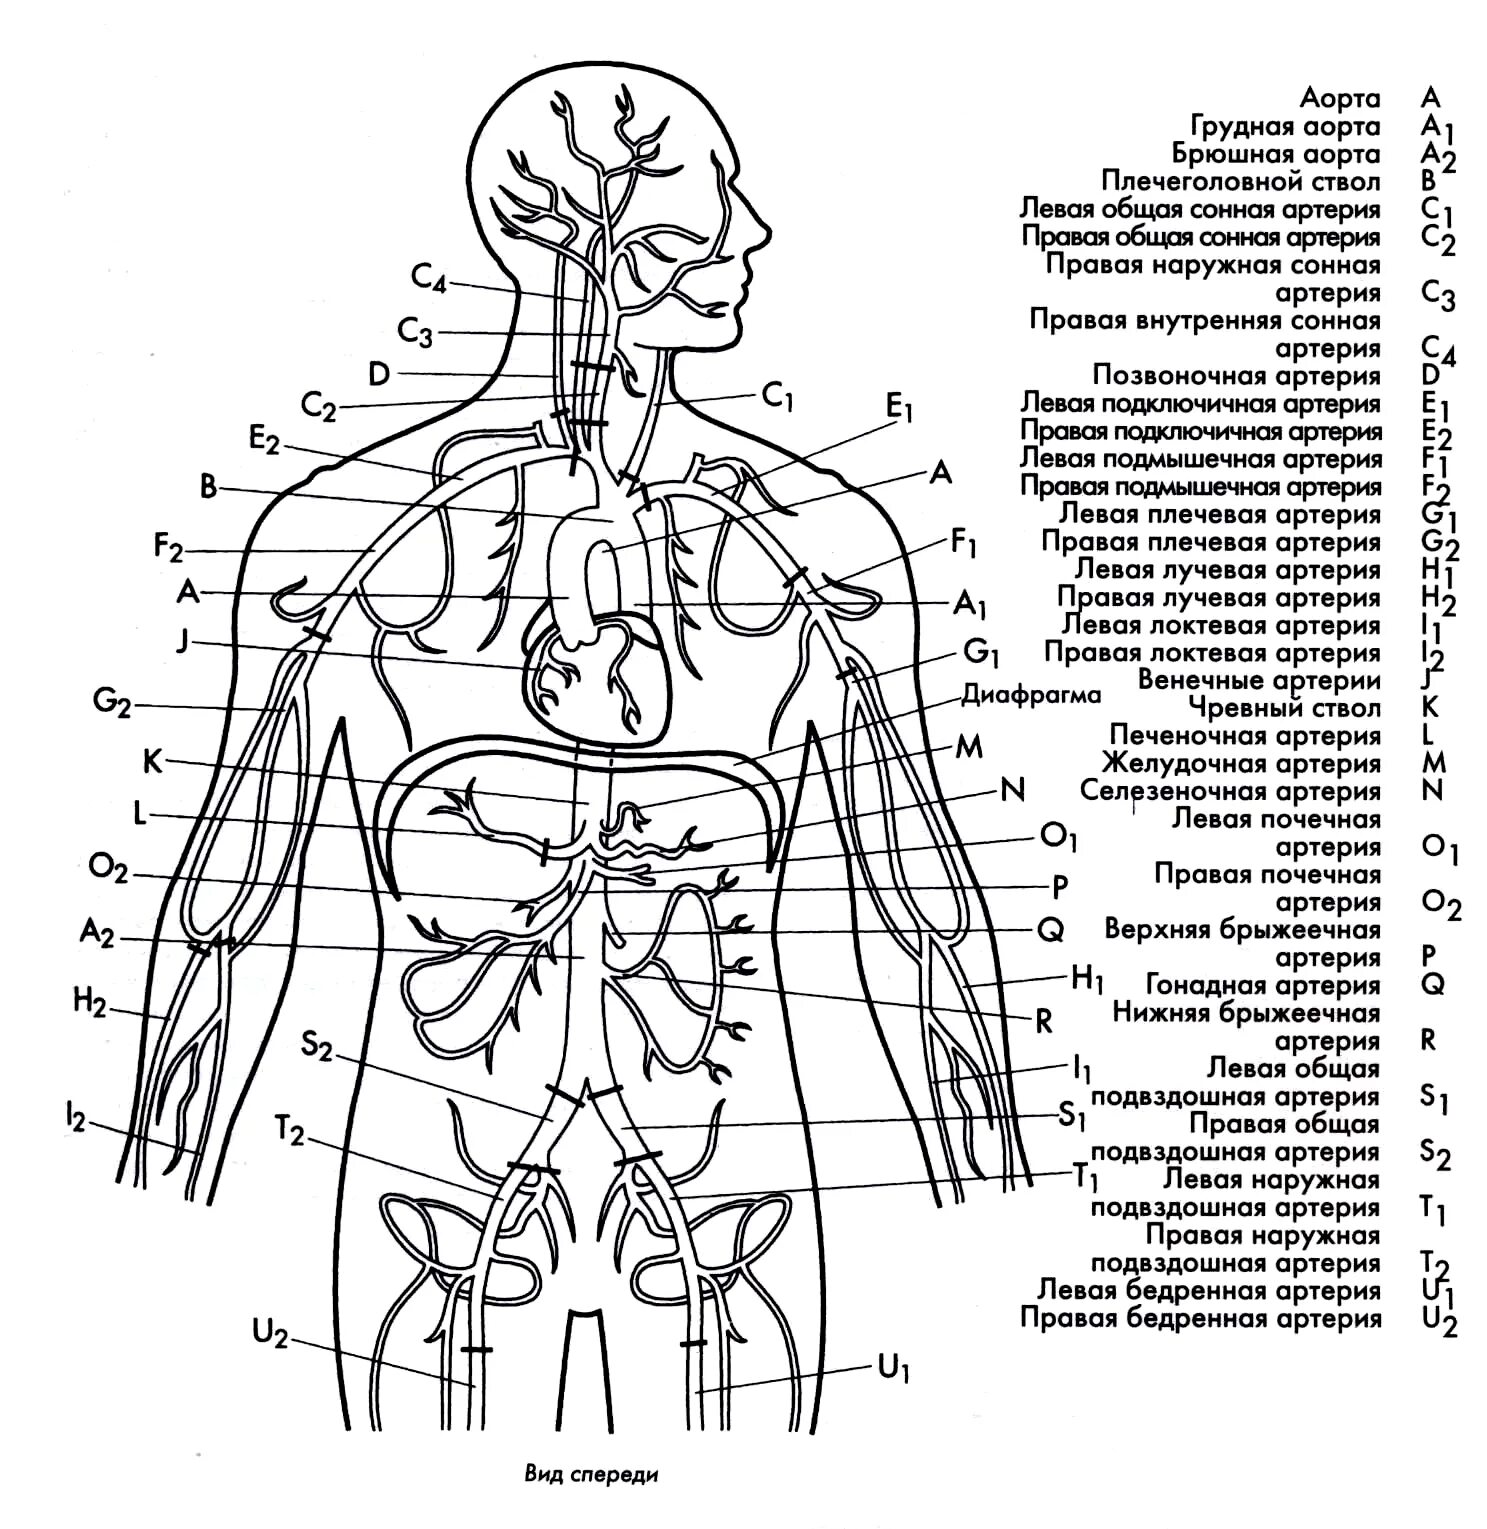 Изображения систем органов человека. Венозная система человека анатомия схема расположения. Внутренние органы человека схема схема. Артериальная система схема артерий. Схема строения артериальной системы.